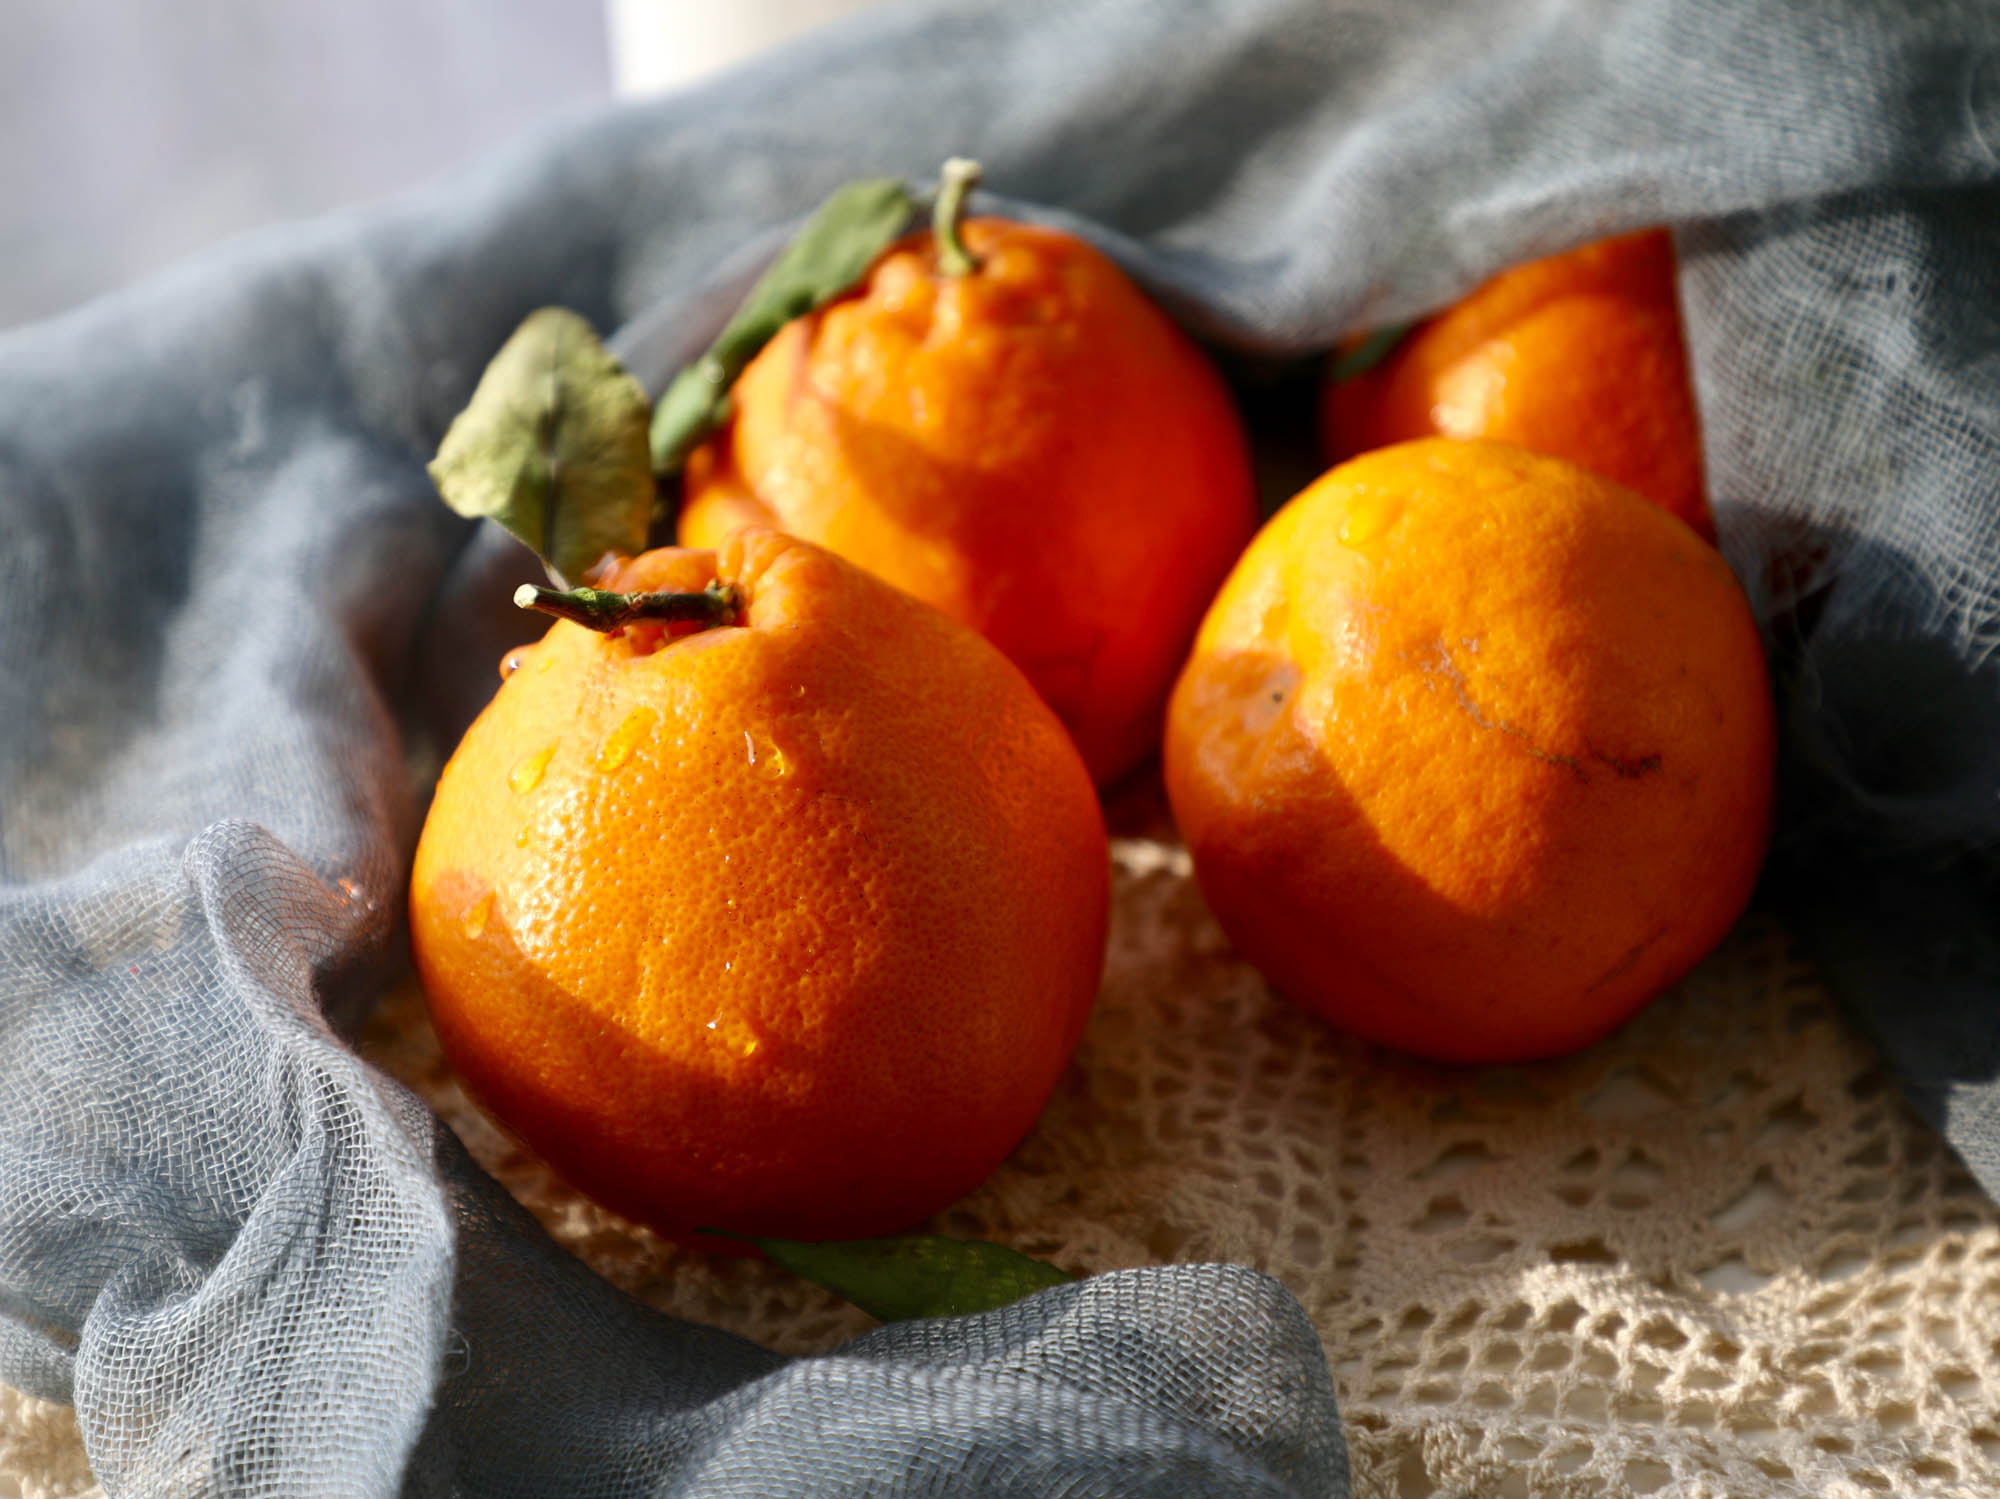 aromatyczne, dojrzałe pomarańcze leżące na tkaninie